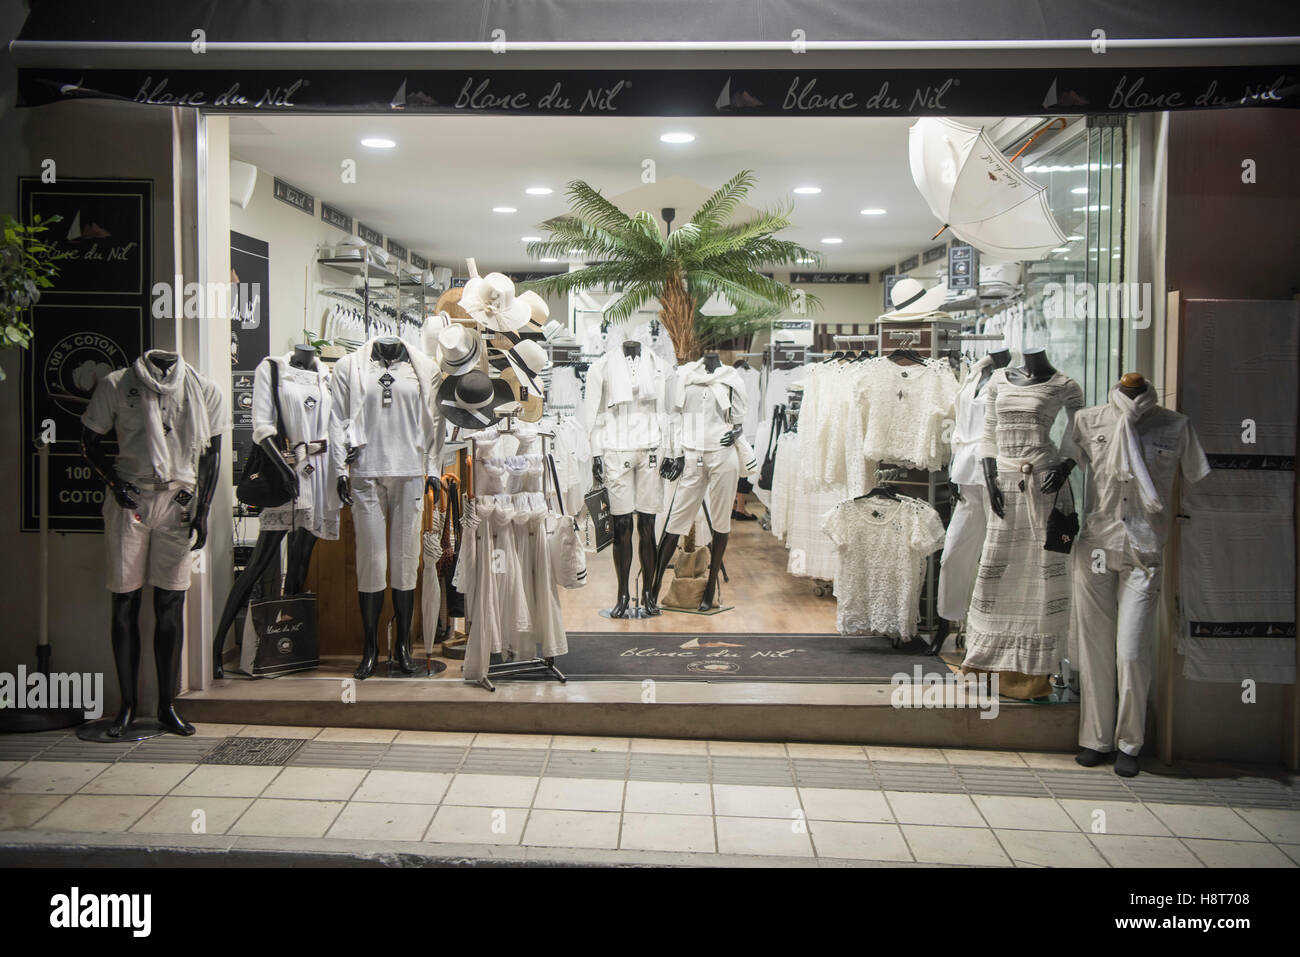 Griechenland, Kreta, Agios Nikolaos, Vorahnung Für Weisse Kleidung, Blanc du Nil Stockfoto